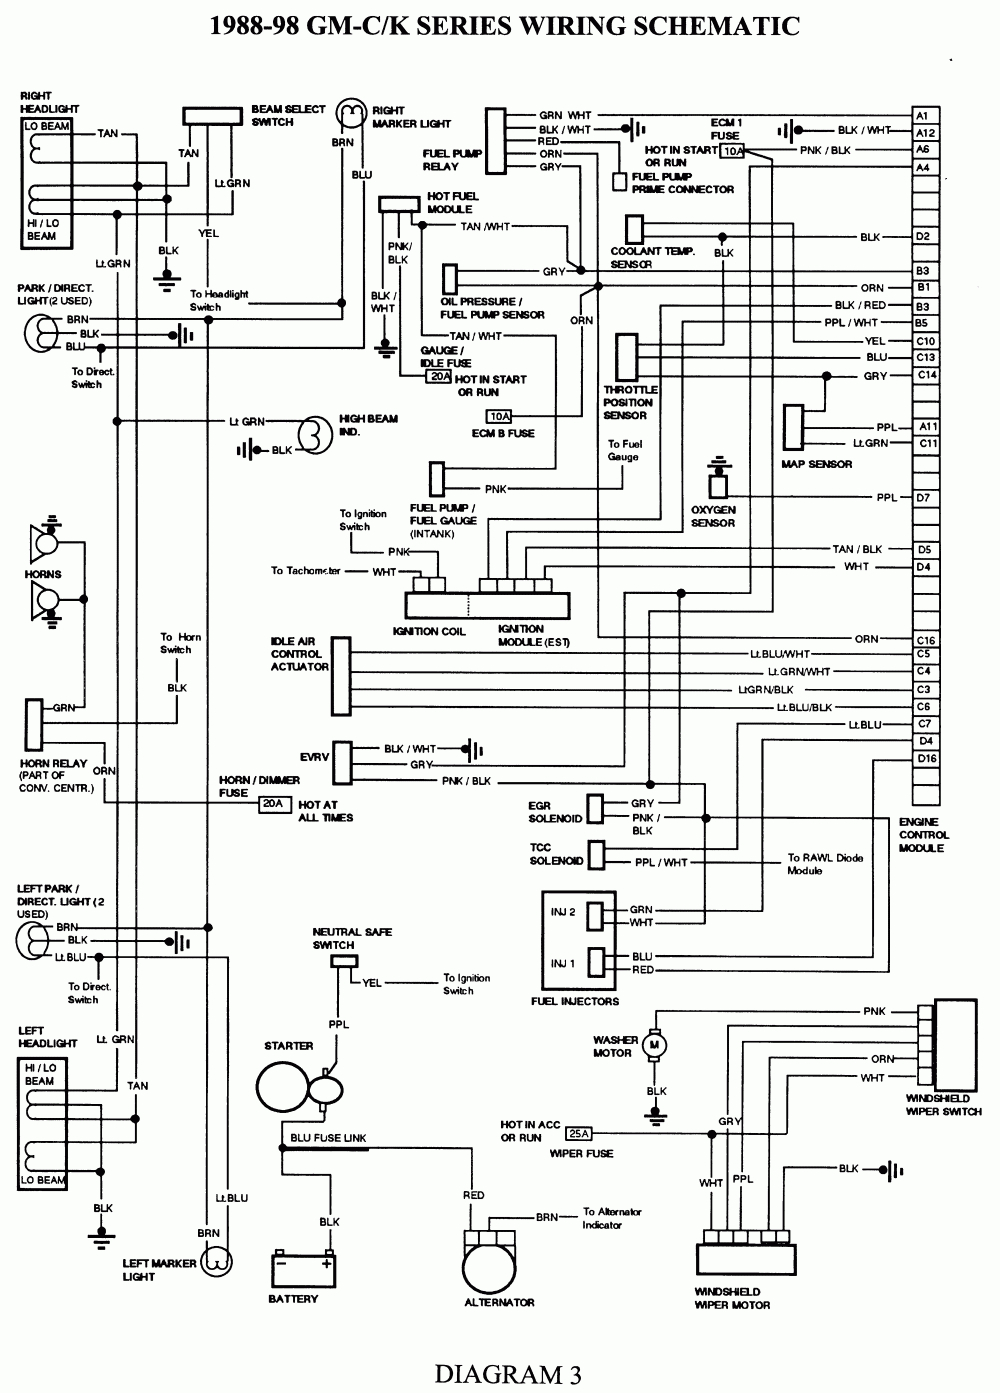 Repair Guides | Wiring Diagrams | Wiring Diagrams | Autozone - 1998 Chevy Silverado Wiring Diagram